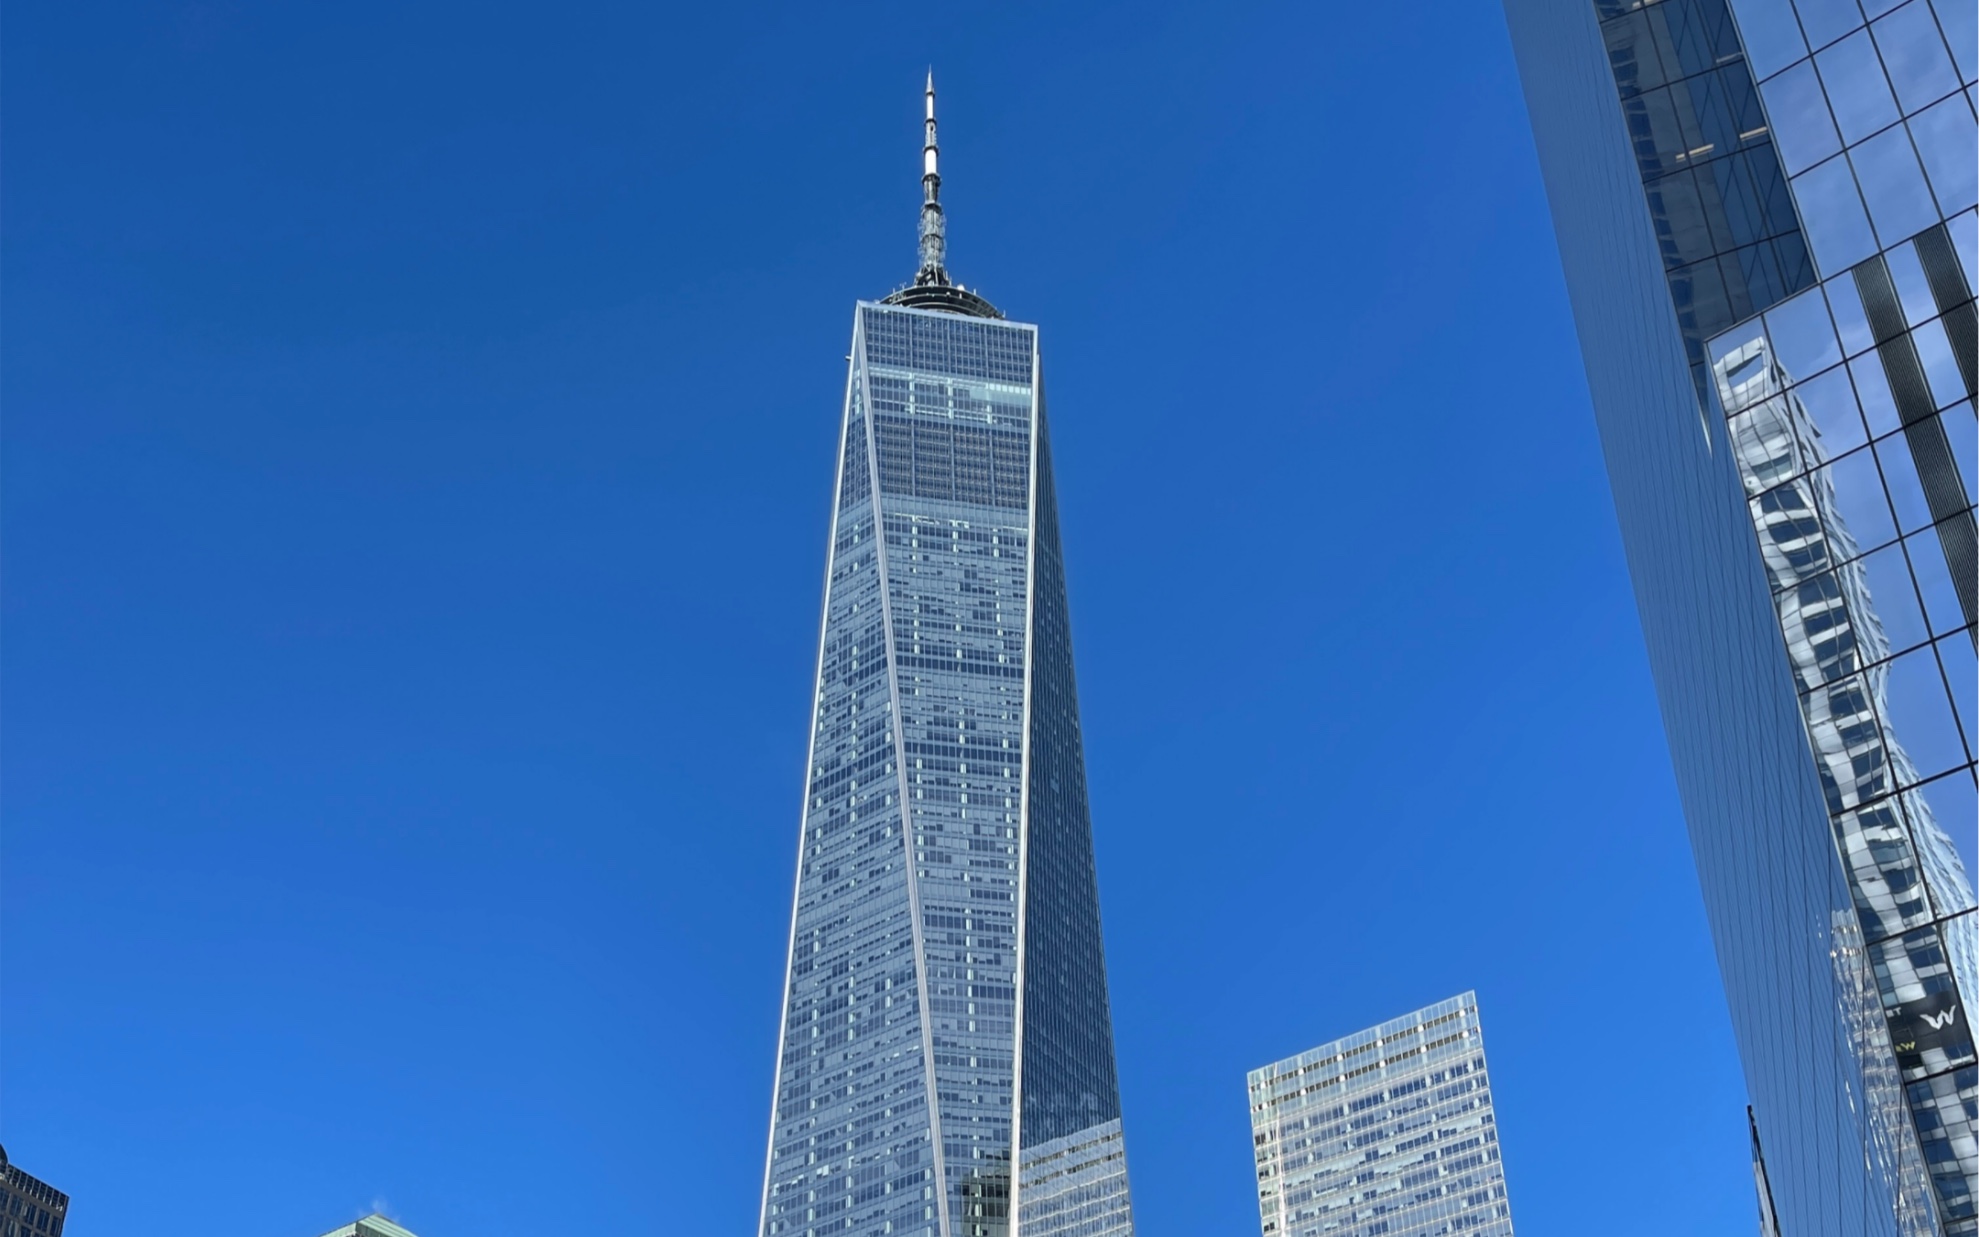 Thyseen Krupp AG 美国第一高楼&第二高观景台 纽约世贸中心一号大楼观景台德国-美国组装蒂森克虏伯DSC直达高速电梯B1-102层上行